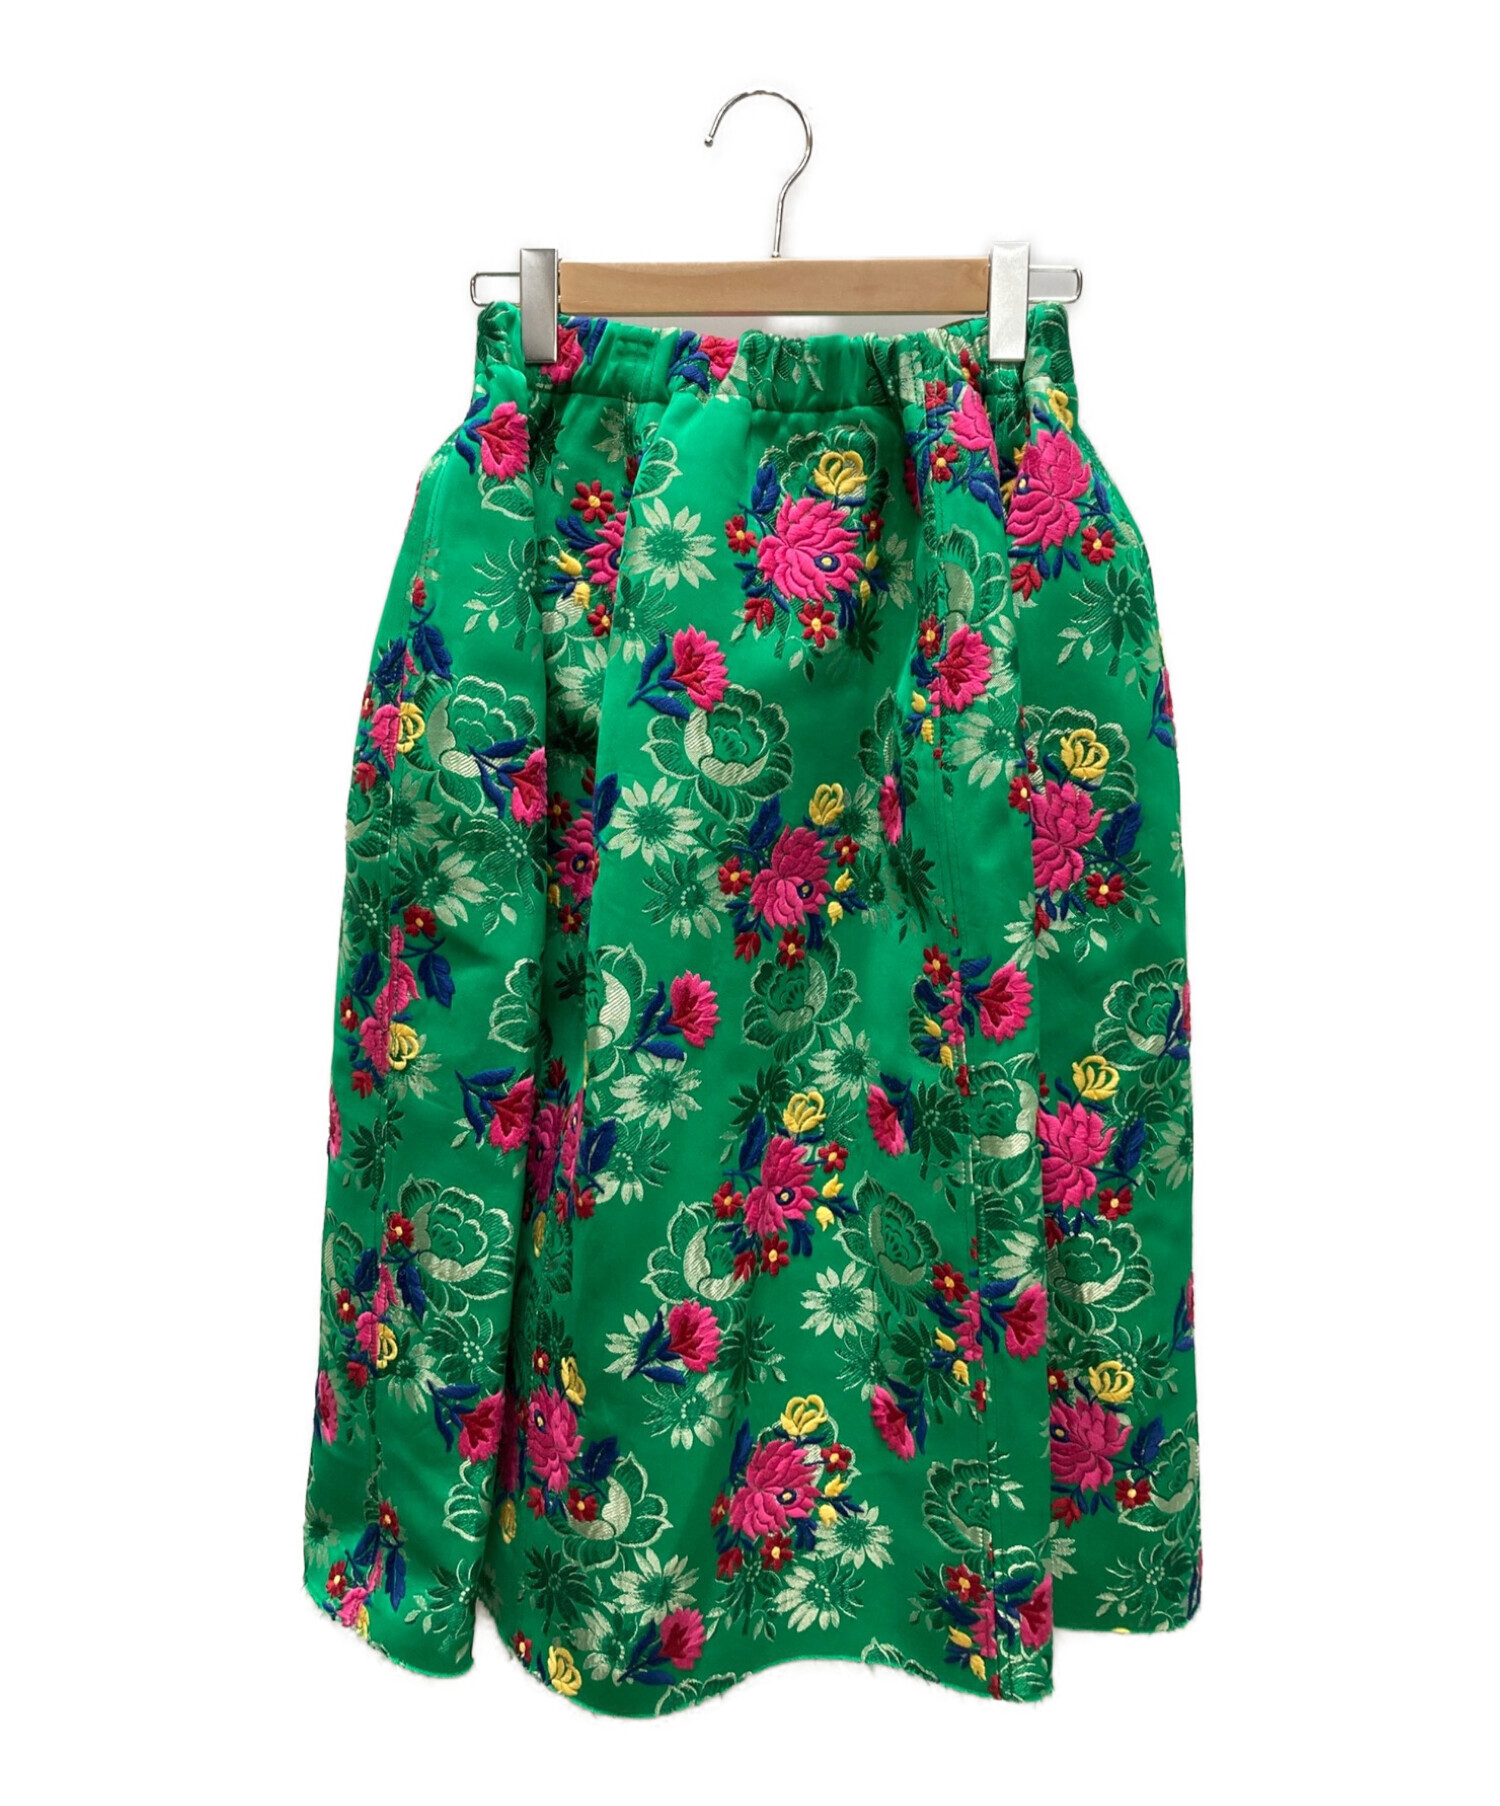 MARNI (マルニ) ジャガード刺繍ボリュームスカート グリーン サイズ:38